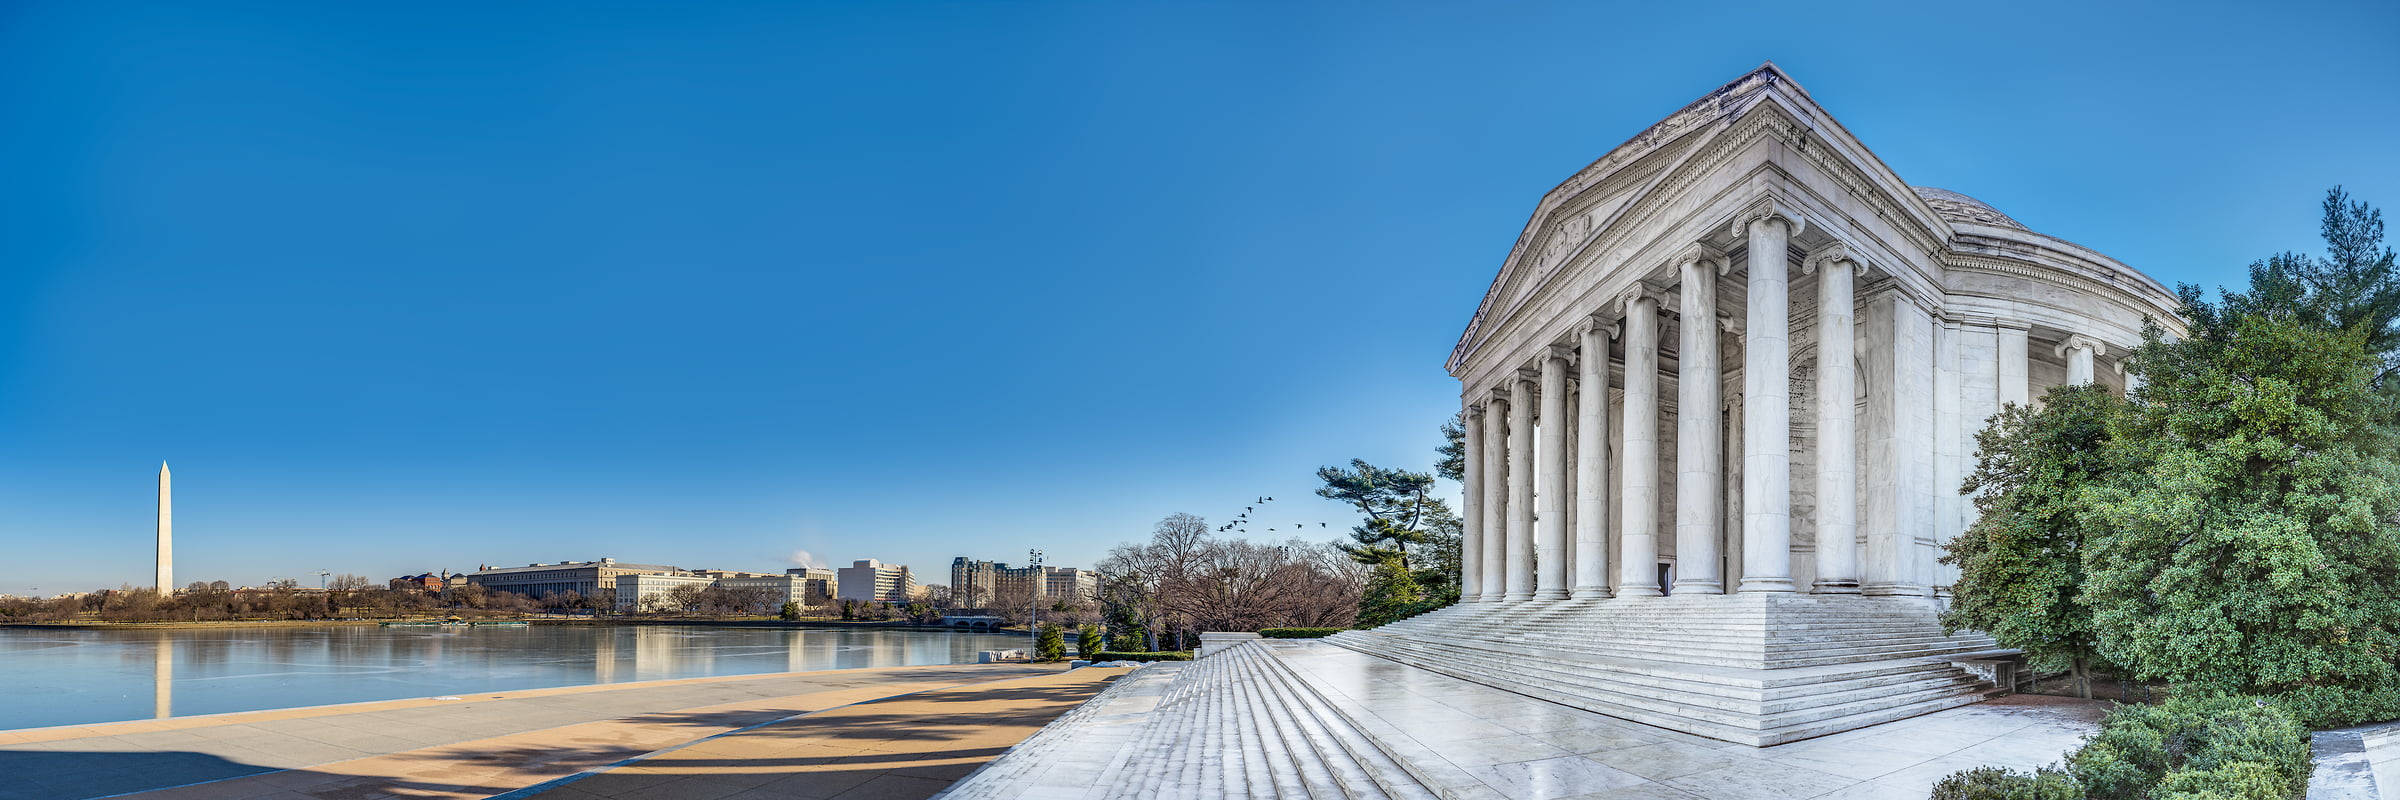 Jefferson Memorial Panoramic Shot Wallpaper